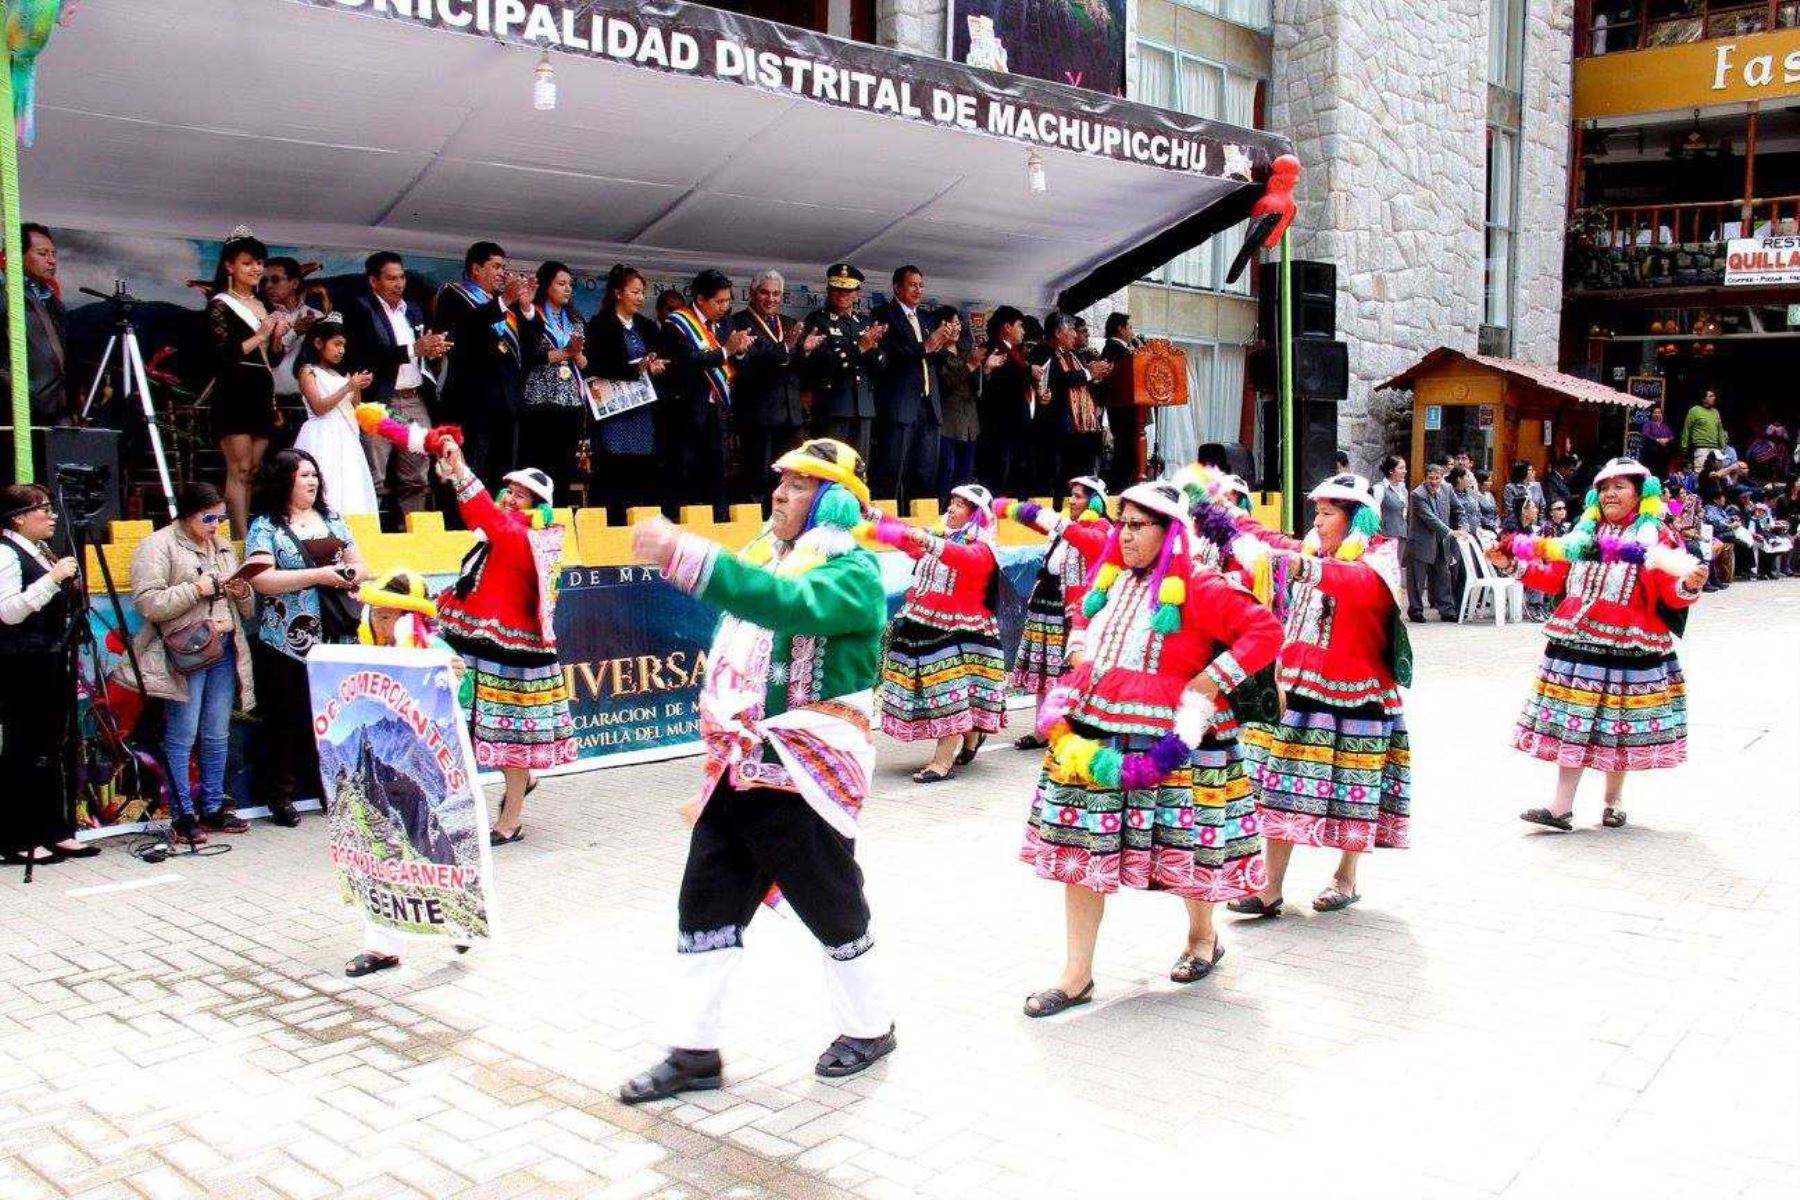 Autoridades y población del distrito de Machu Picchu celebraron con una serie de actividades el undécimo aniversario de la declaración del Santuario Histórico de Machu Picchu una de las Siete Nuevas Maravillas del Mundo Moderno, tras una selección organizada por la fundación New Seven Wonders.